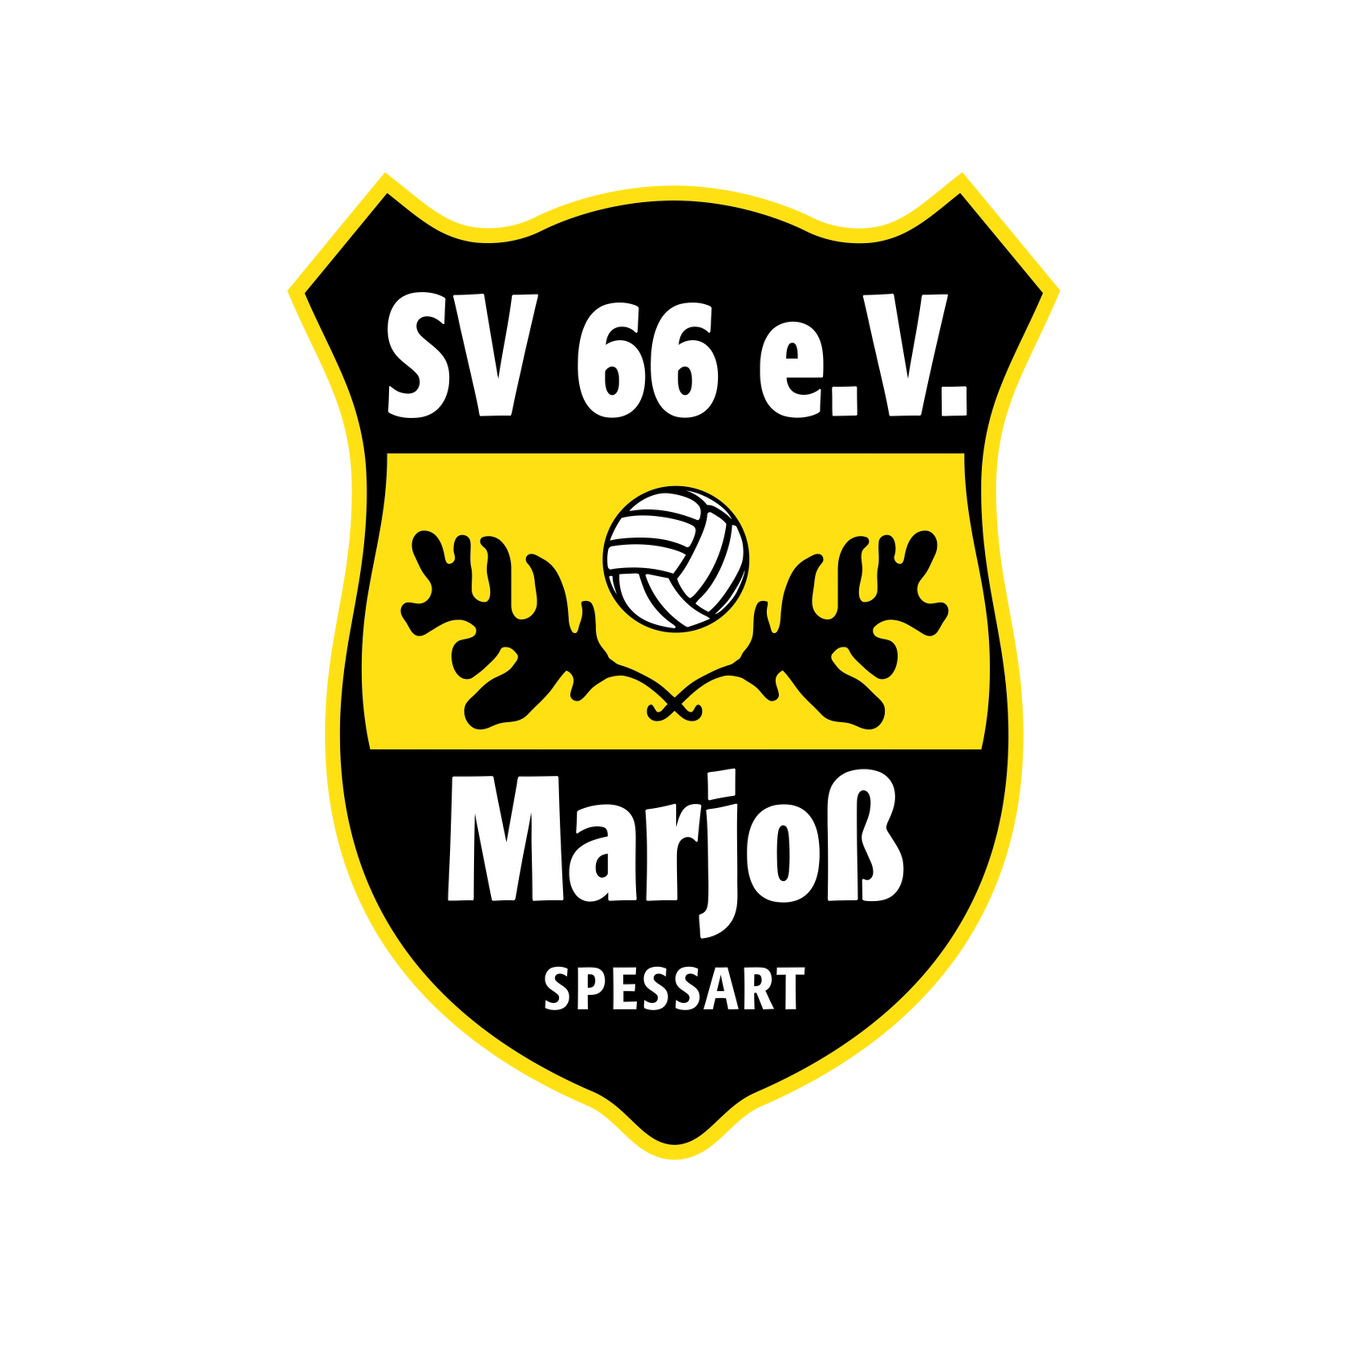 SV Marjoß 1966 e.V.